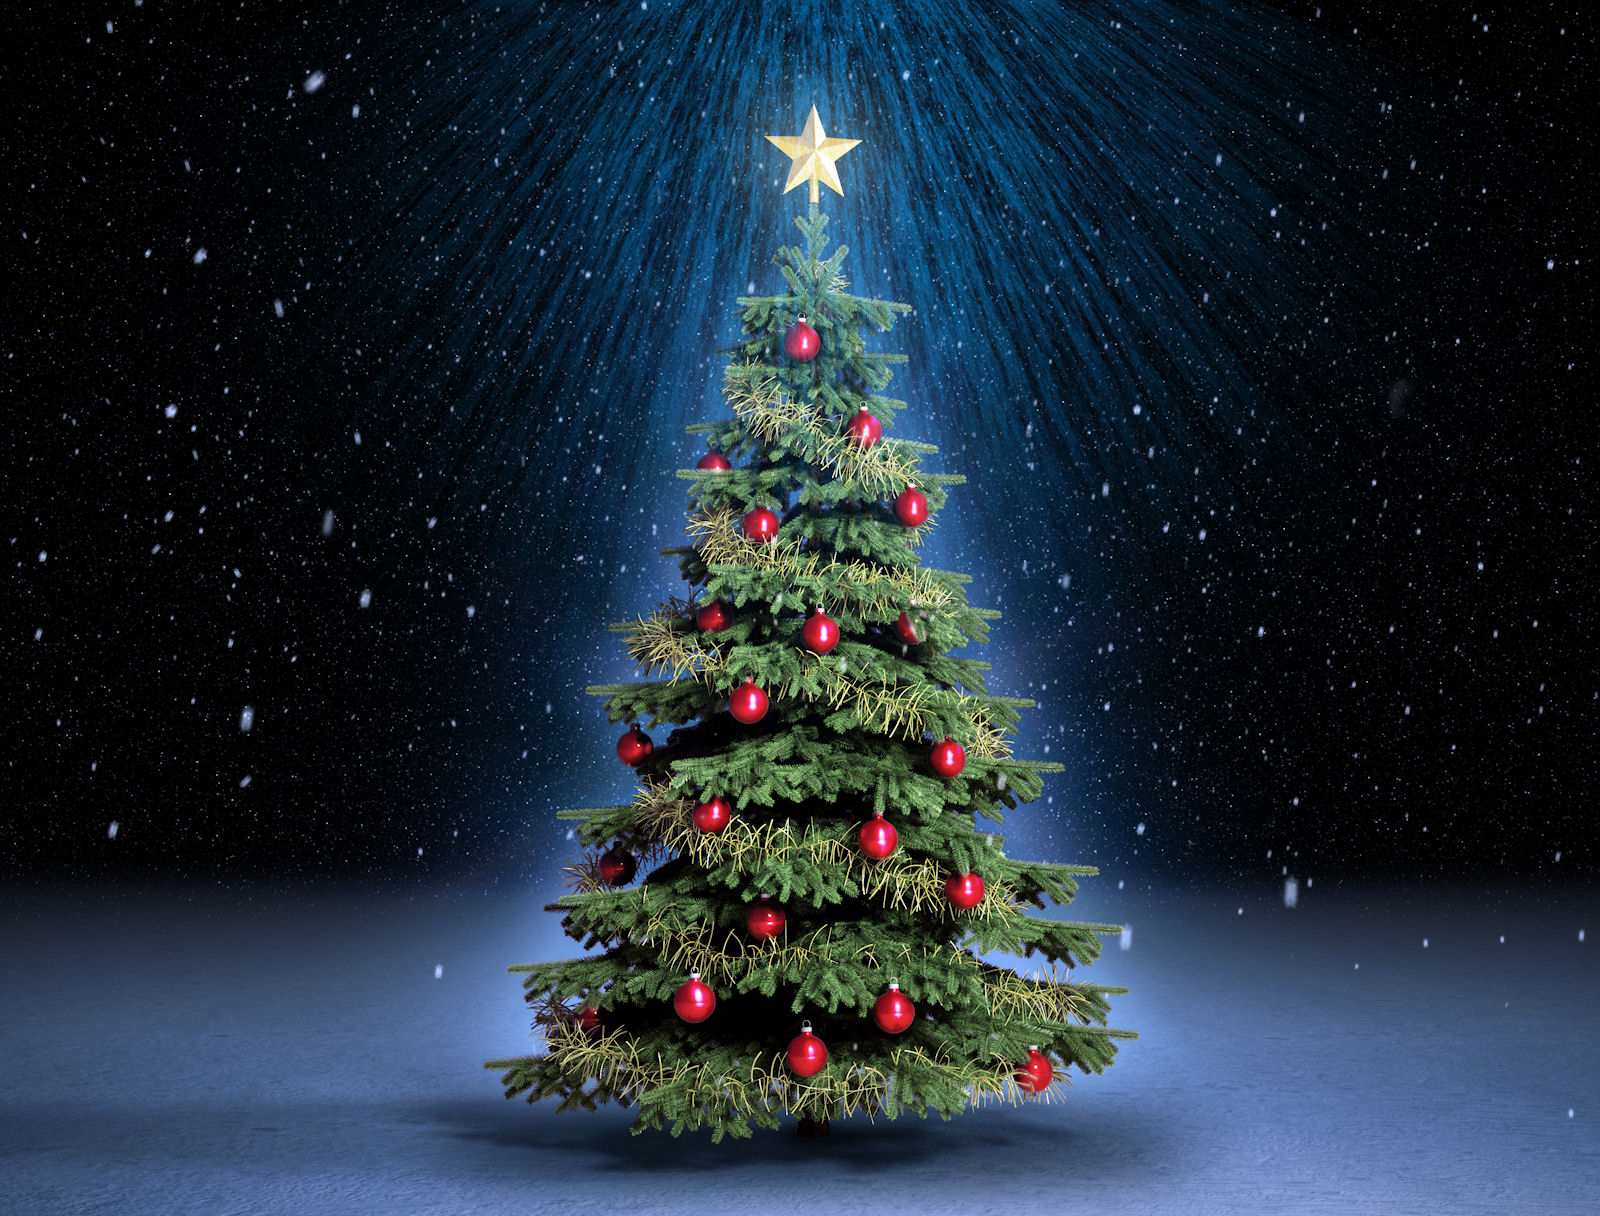 El Ayuntamiento de Buñol invita a los vecinos a decorar el árbol de Navidad  del consistorio - hoyunclick